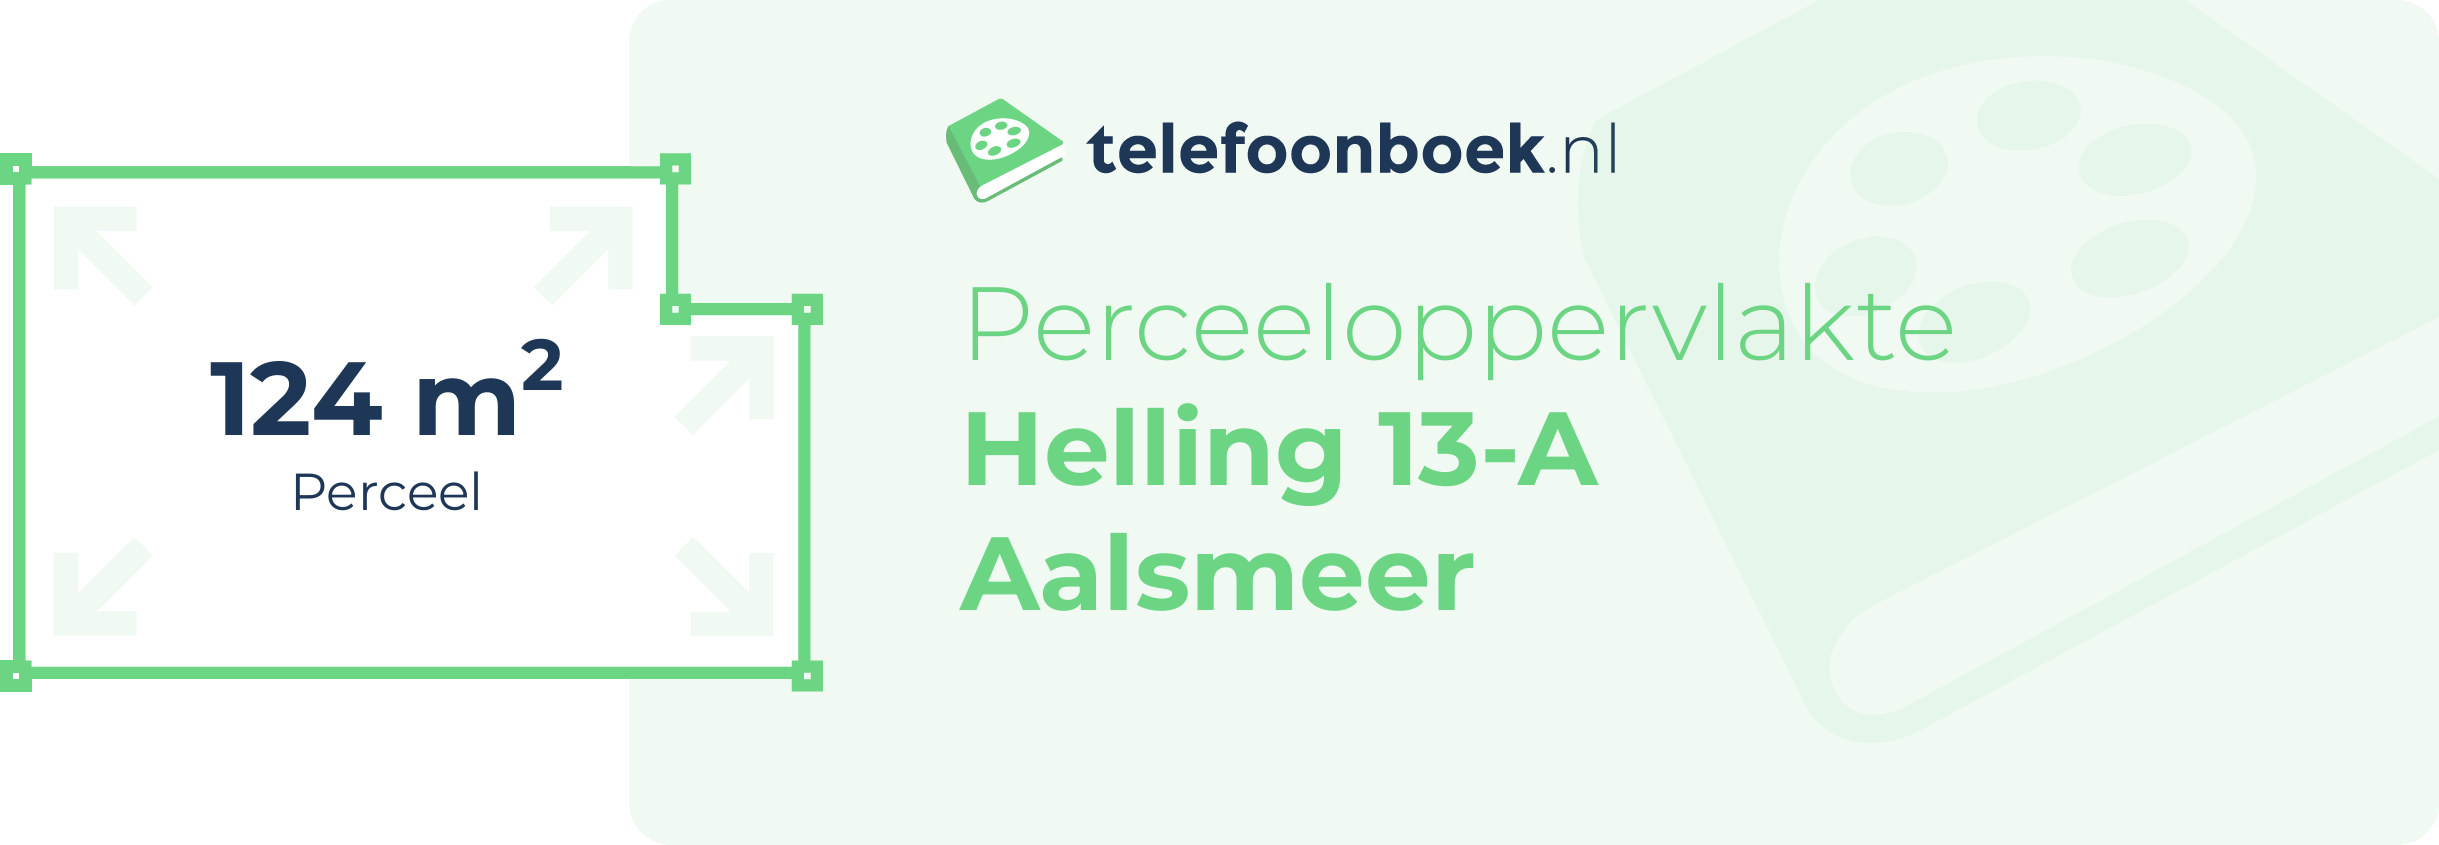 Perceeloppervlakte Helling 13-A Aalsmeer